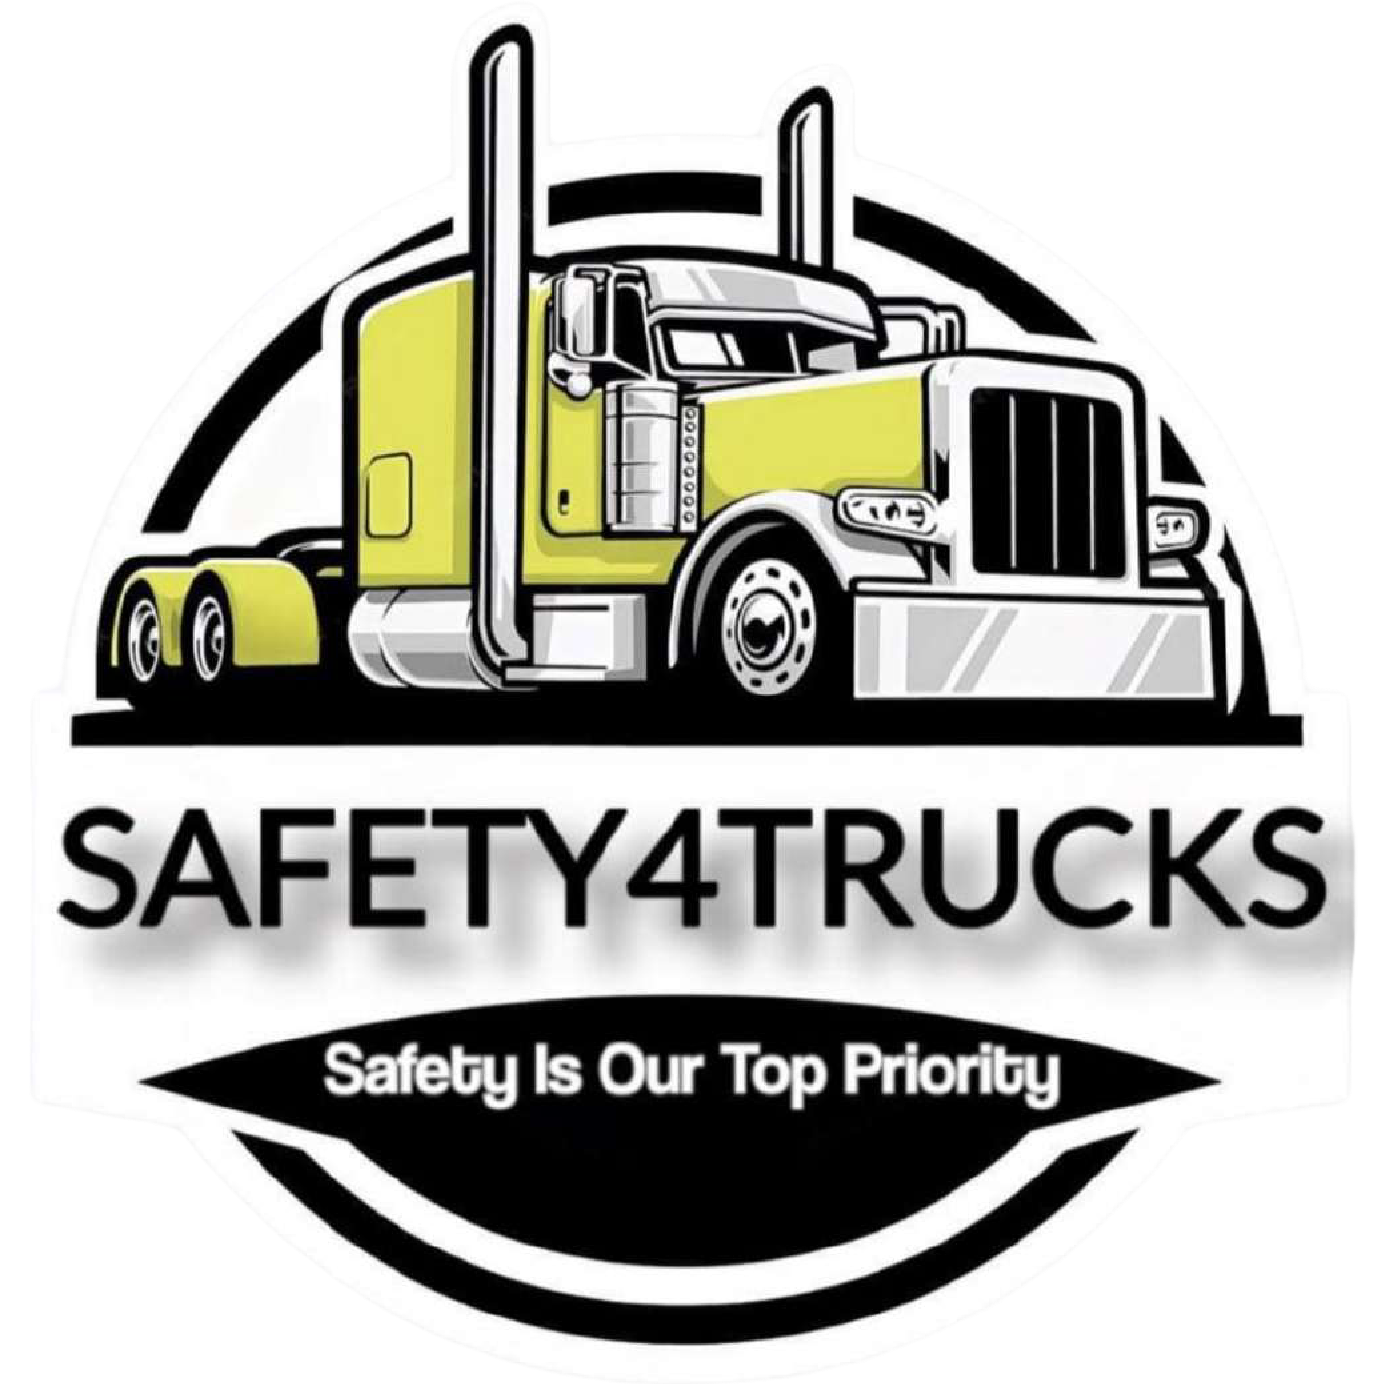 Safety4Trucks